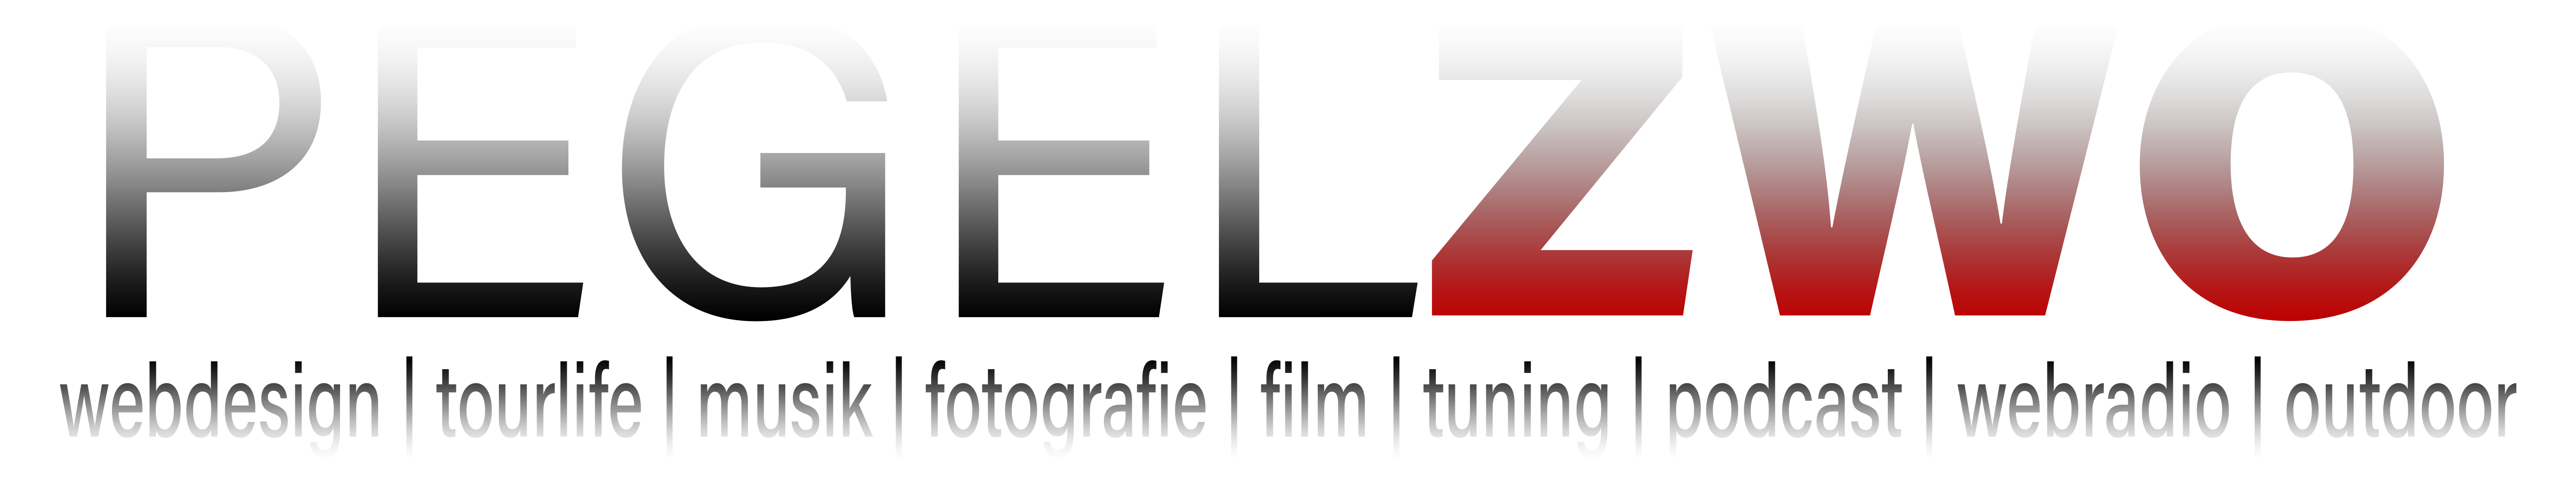 pegelzwo.de Logo